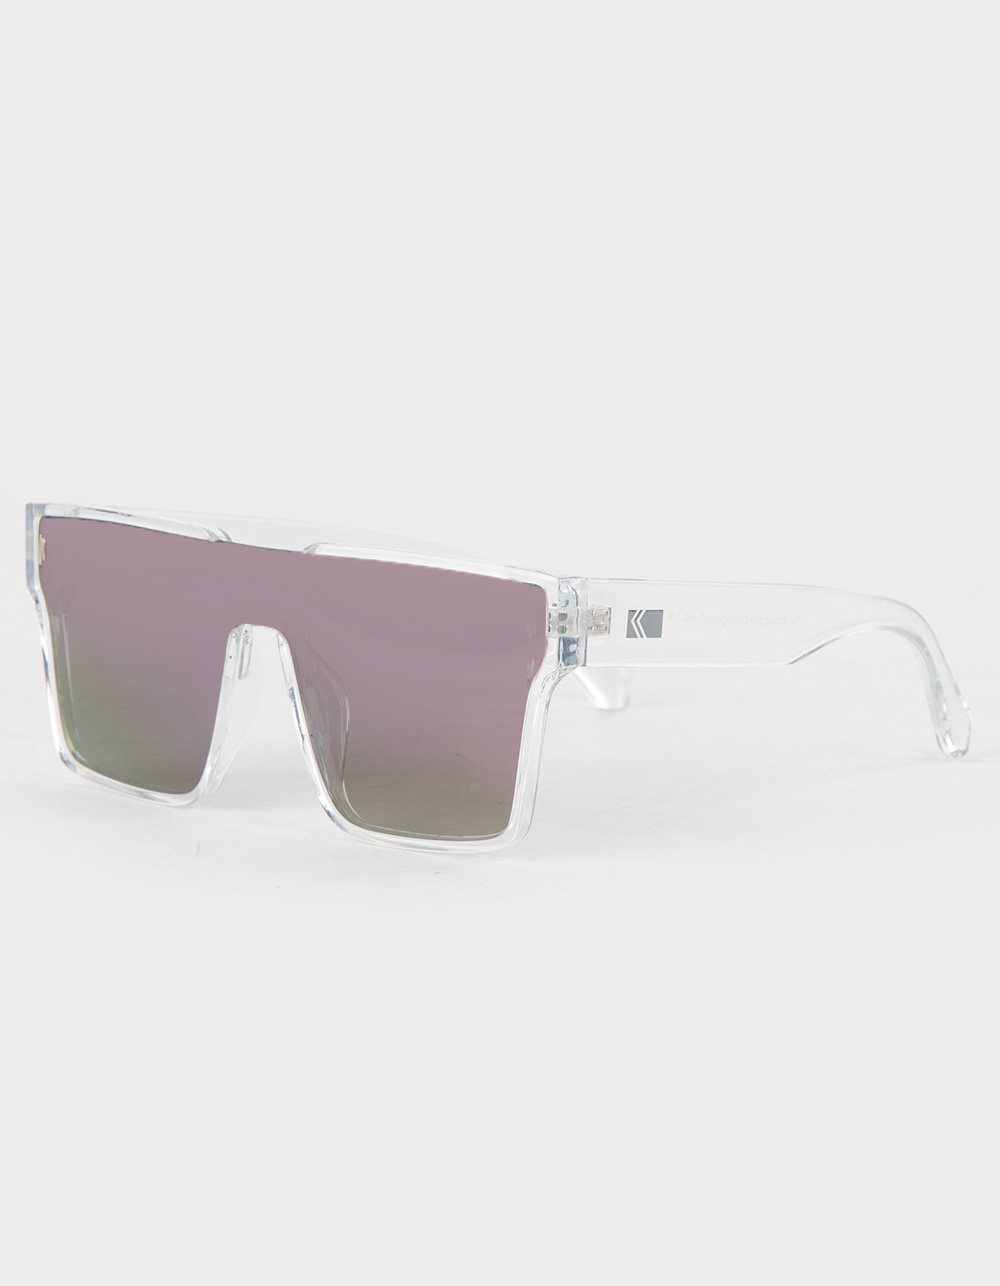 KREEDOM Headliner Sunglasses - PURPLE COMBO | Tillys